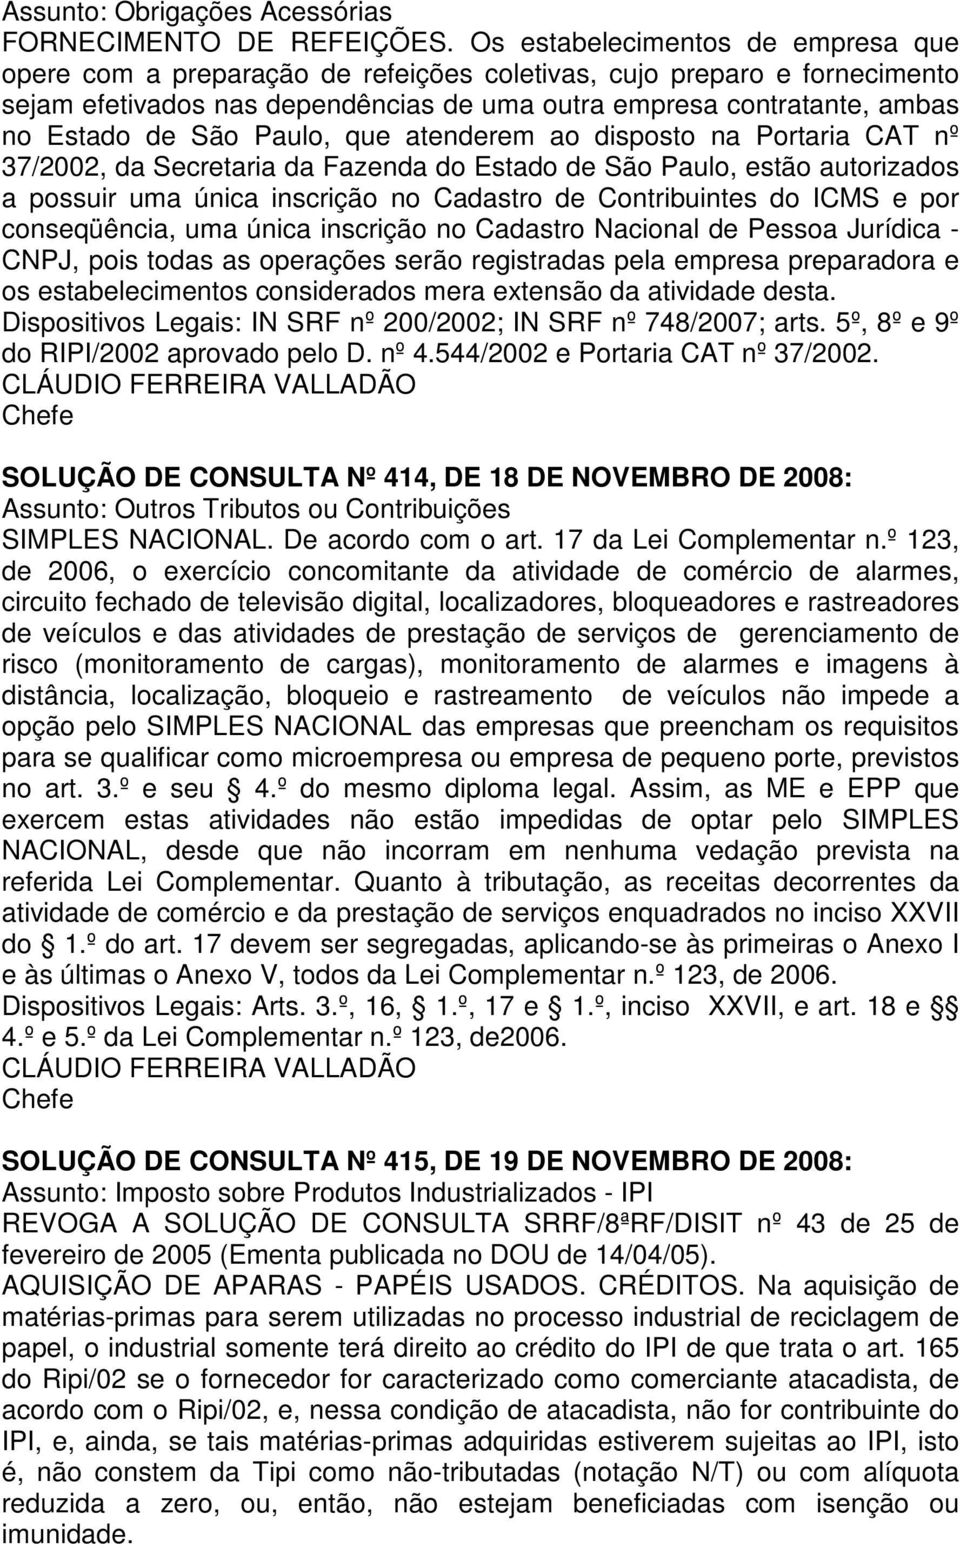 São Paulo, que atenderem ao disposto na Portaria CAT nº 37/2002, da Secretaria da Fazenda do Estado de São Paulo, estão autorizados a possuir uma única inscrição no Cadastro de Contribuintes do ICMS